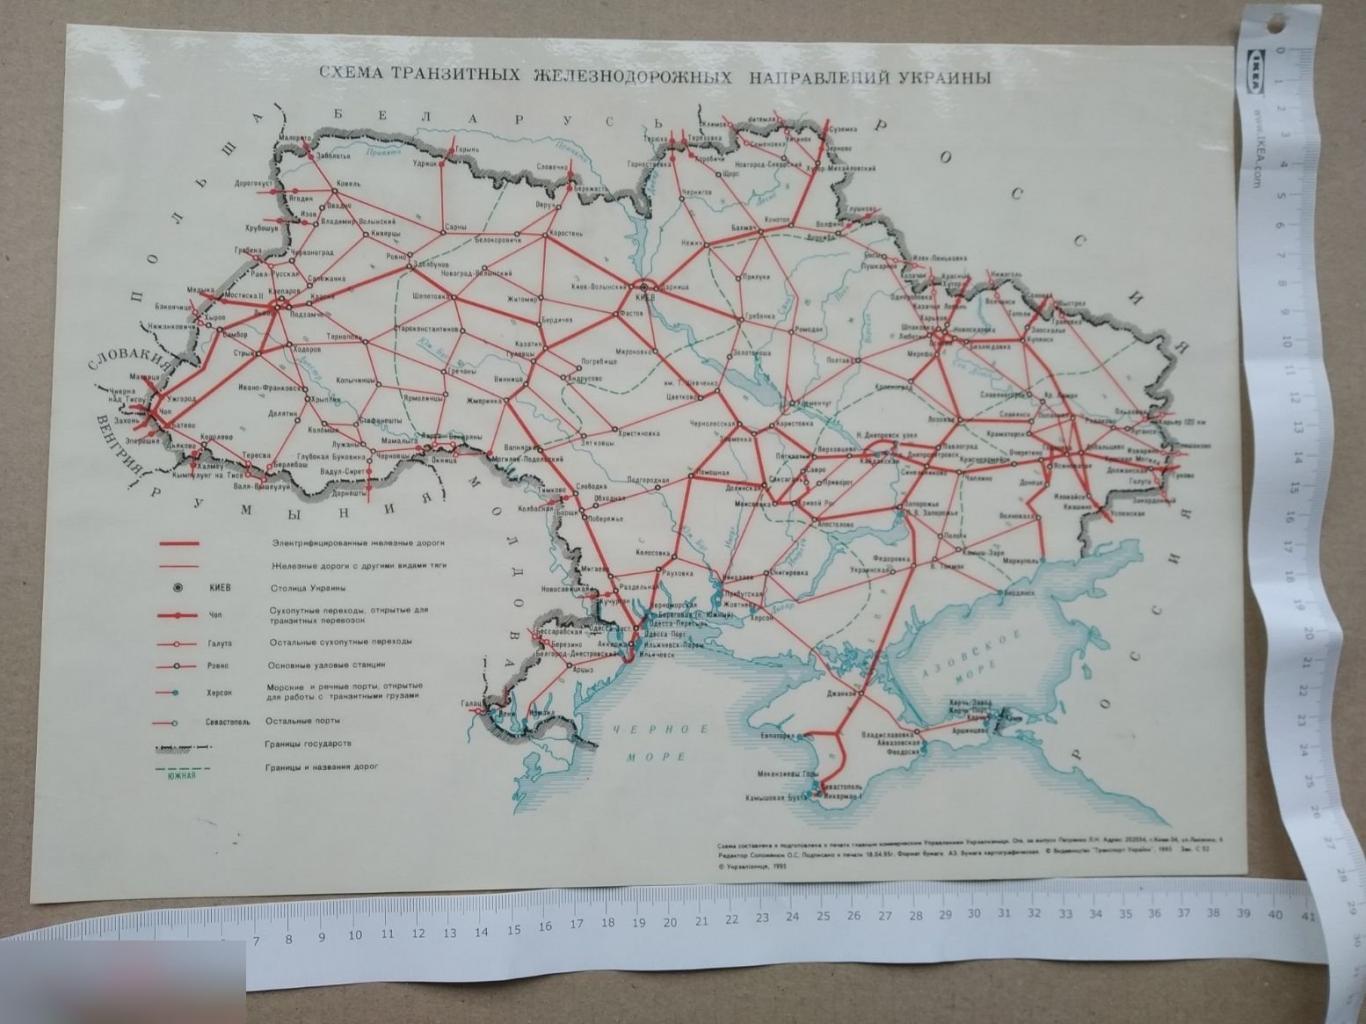 Карта, Схема, Транзитный Железнодорожных Направлений Украина, Железная Дорога, ЖД, Украина